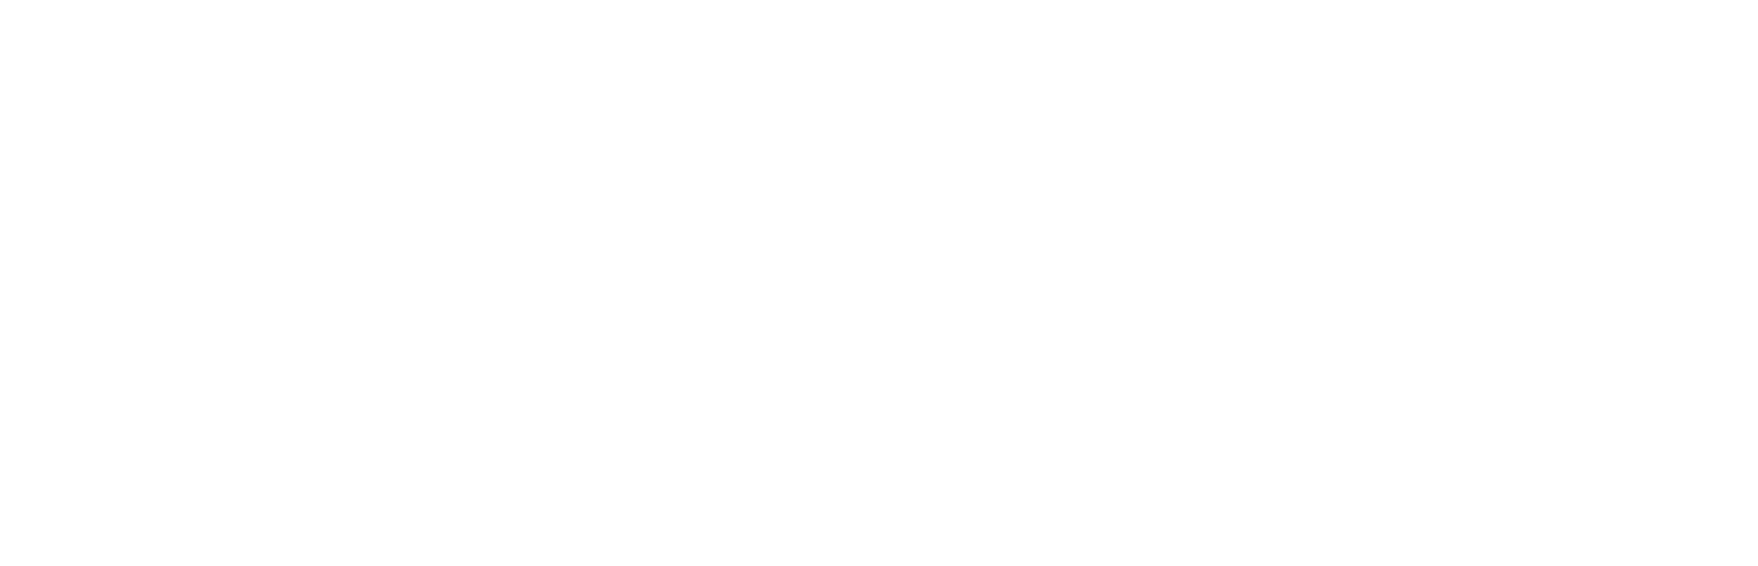 Blind Date Book Club logo